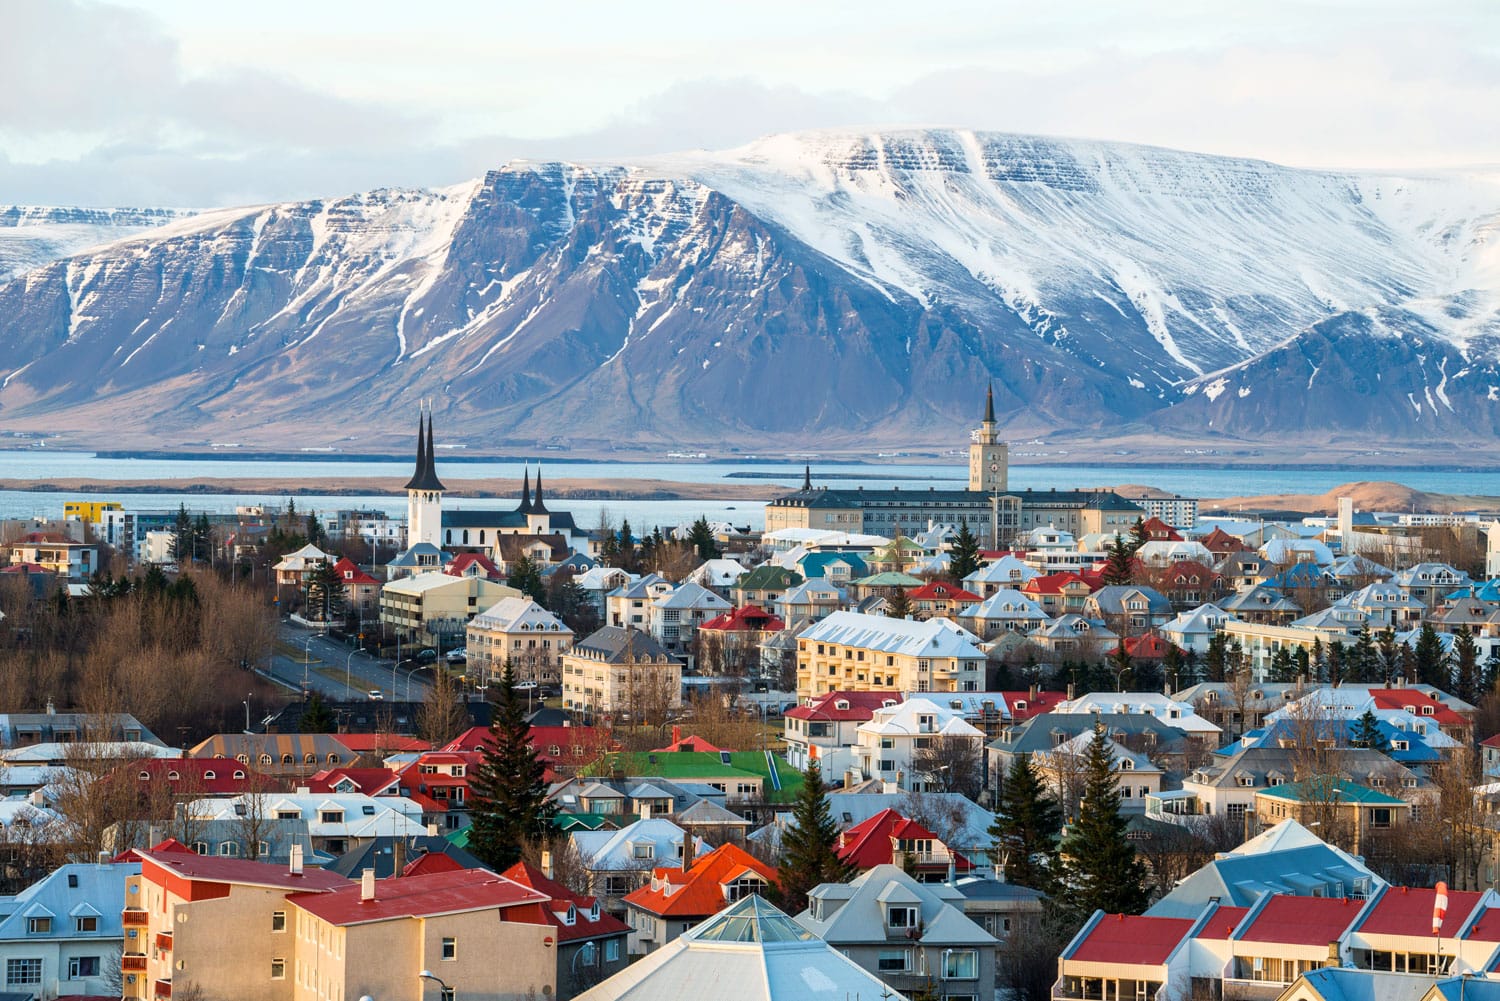 Θέα στο τοπίο του Ρέικιαβικ της πρωτεύουσας της Ισλανδίας στα τέλη του χειμώνα.